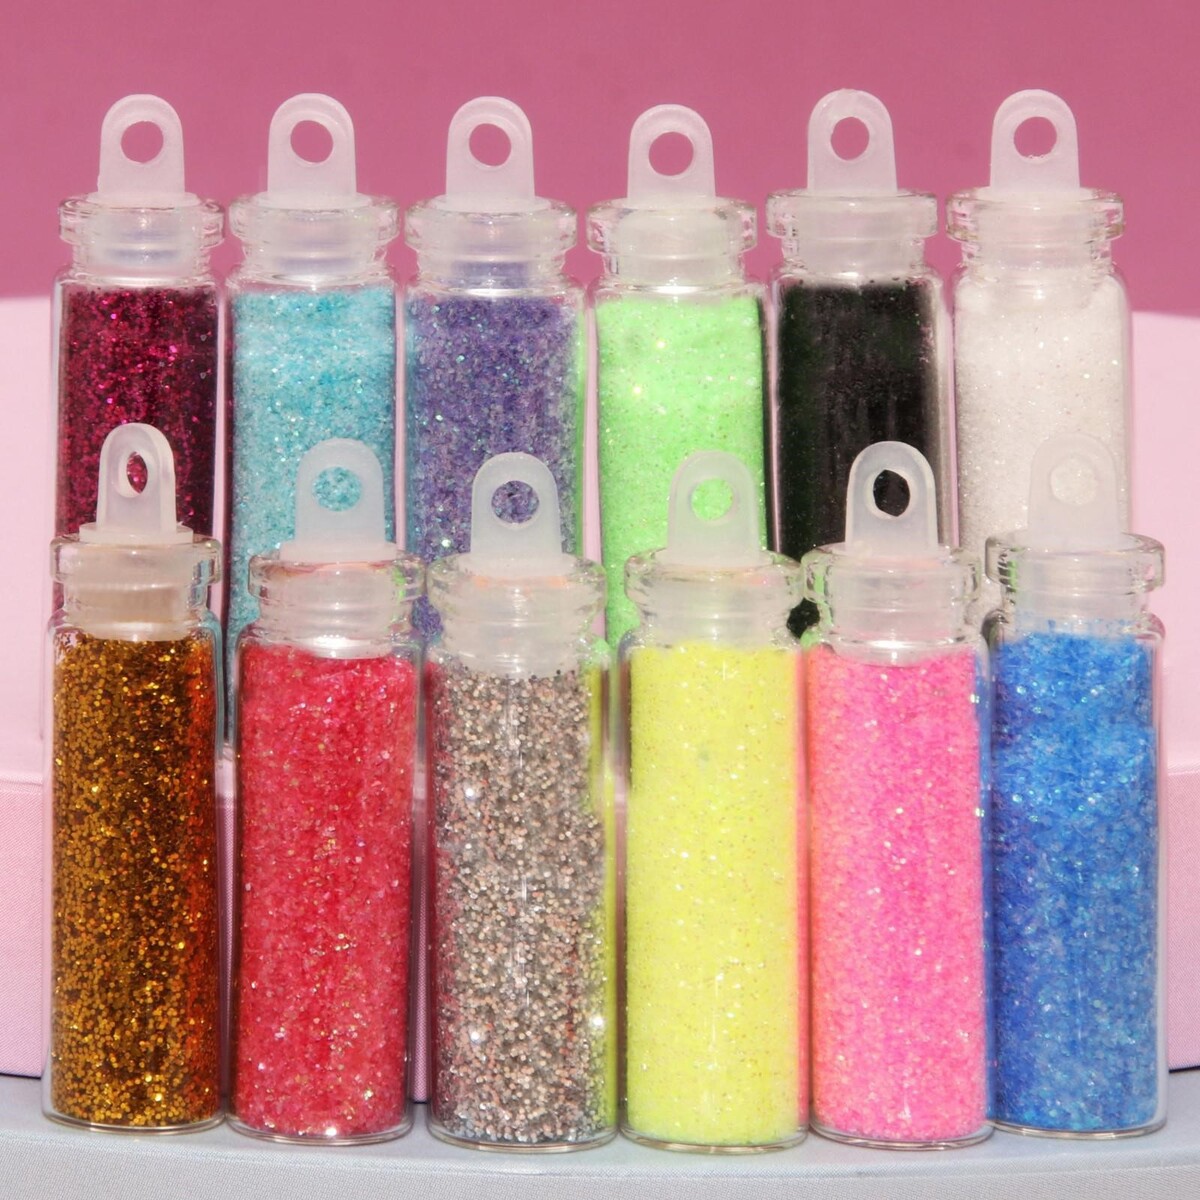 Блестки для декора, мелкие, набор 12 бутылочек, разноцветные мелкие кристаллы для декора ногтей glitter is the new world